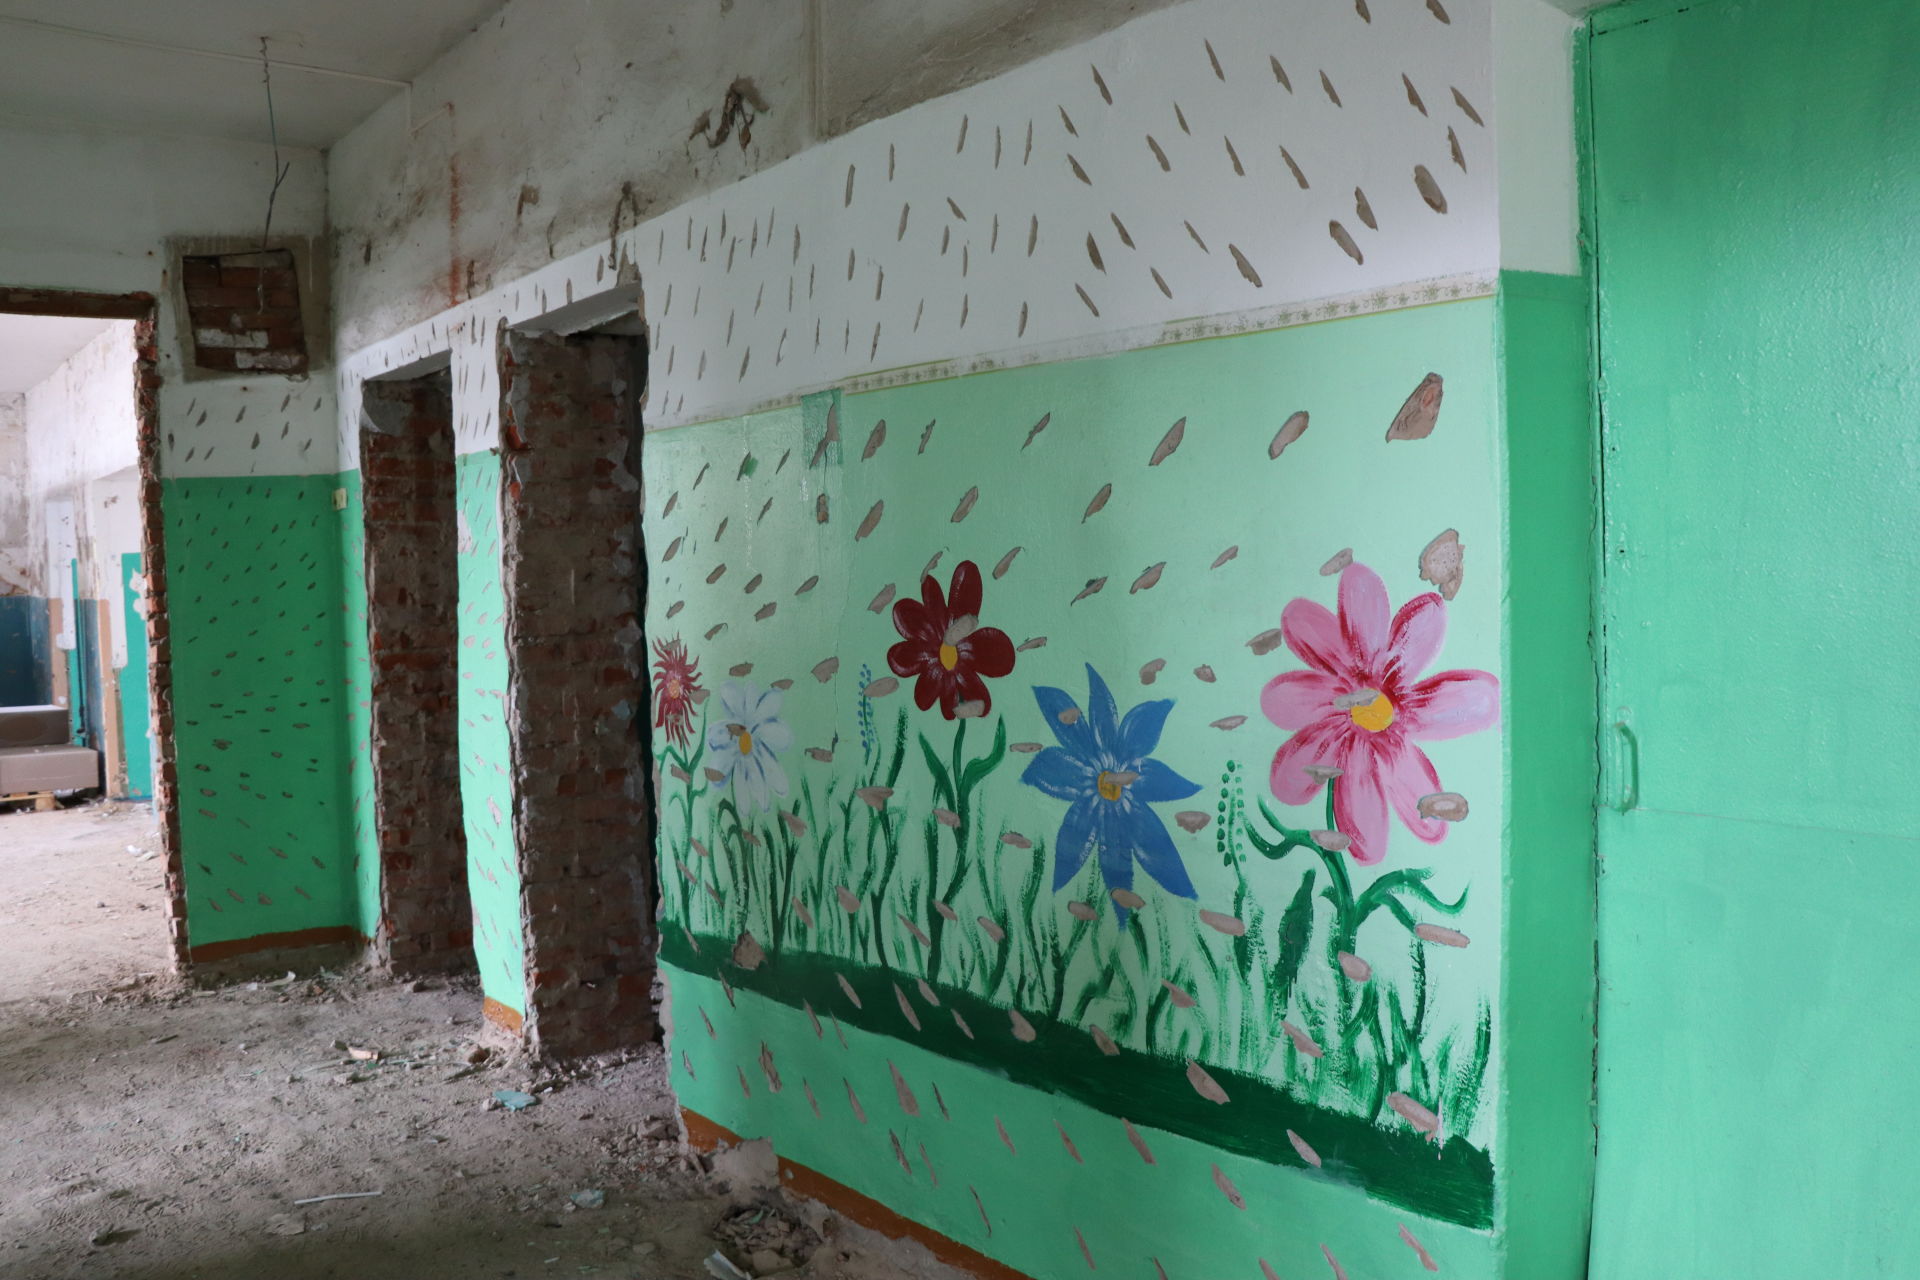 Капитальный ремонт в Тимерликовской школе проводится с заглядом в будущее